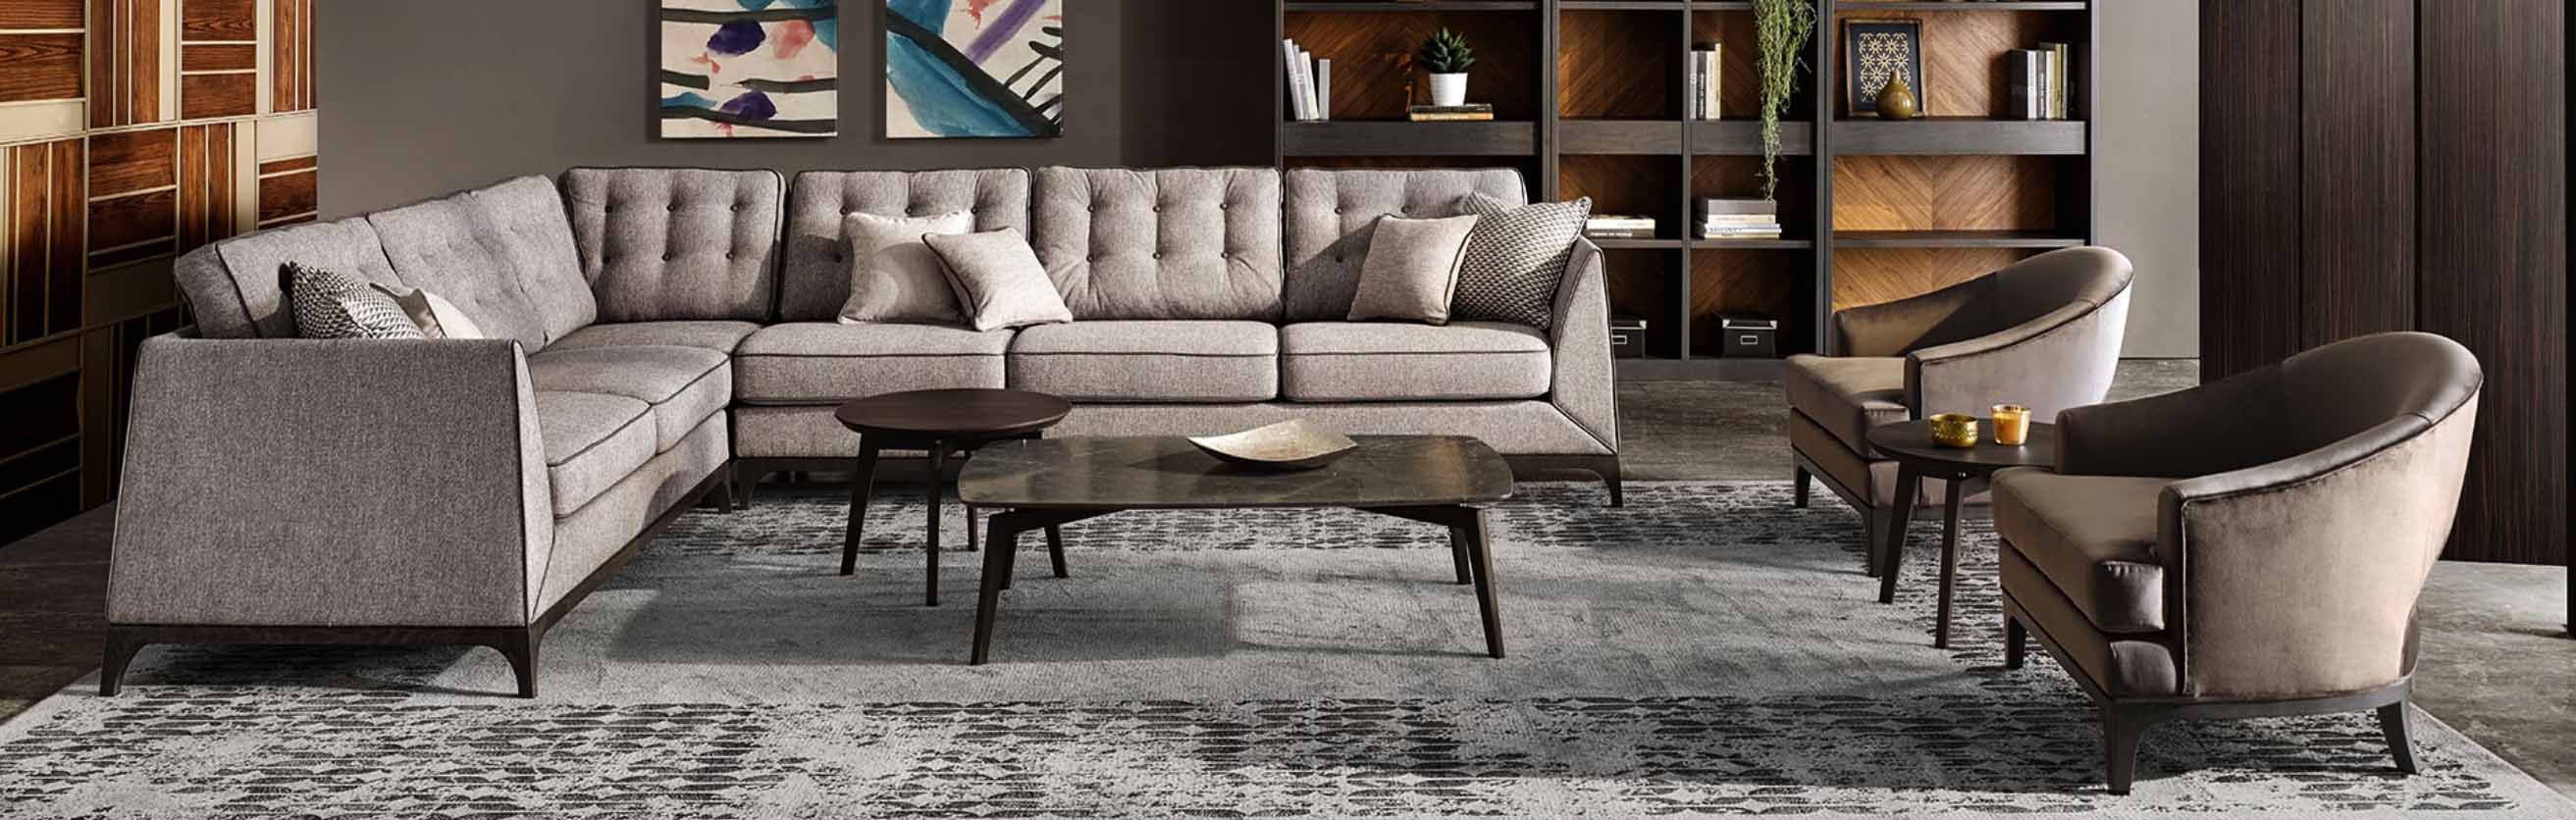 ¡Diseña, decora y renueva tu sala con sofás, sillones y puffs!